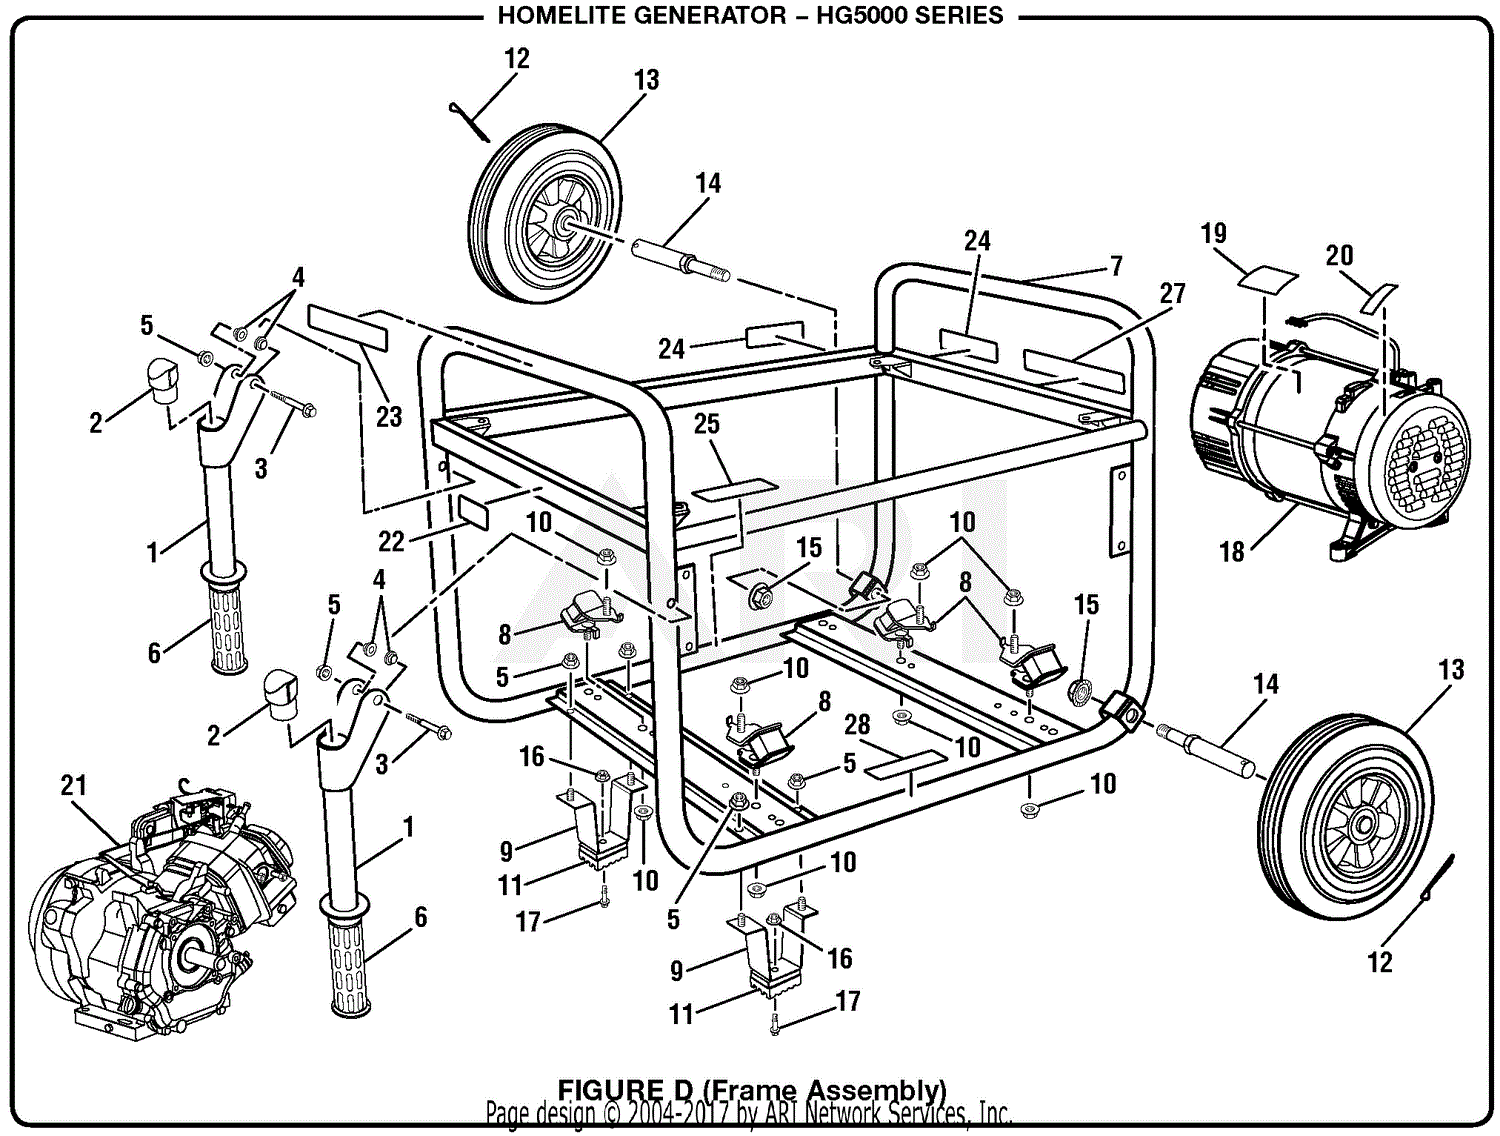 Homelite Hg5000 Series 5000 Watt Generator Parts Diagram